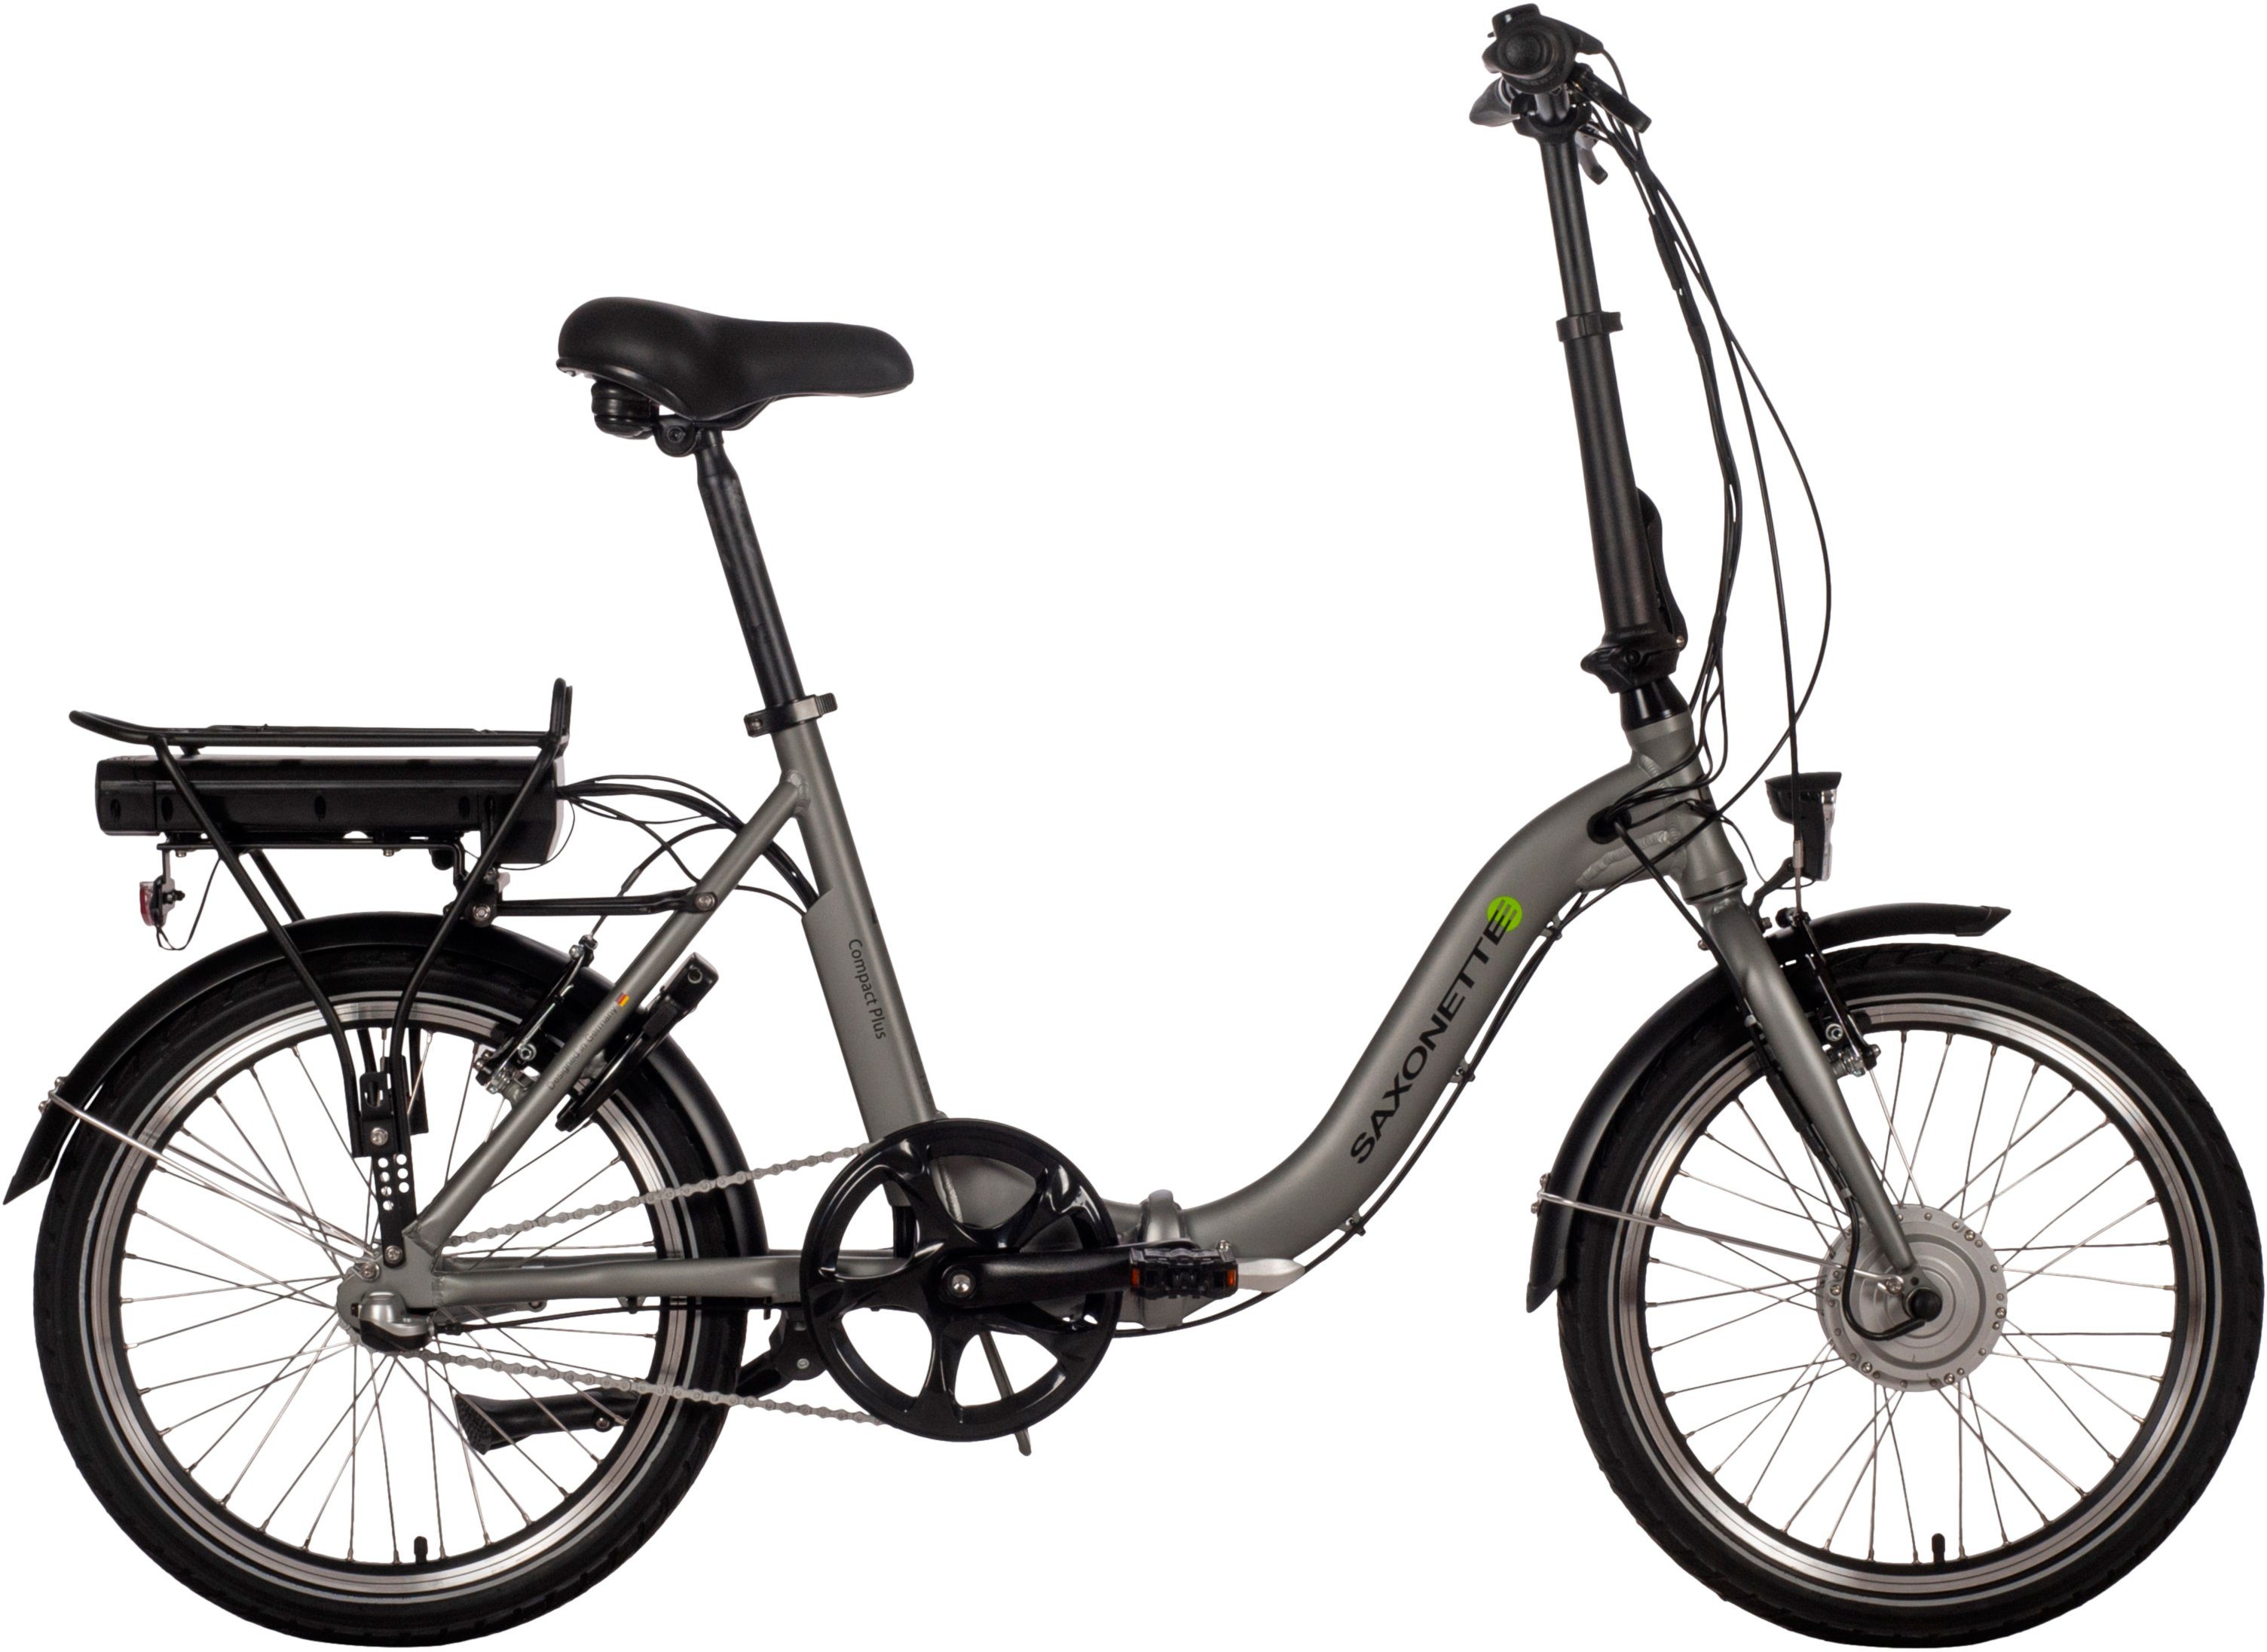 [Heiße Verkäufer] SAXONETTE E-Bike Compact Plus Gang, Wh 281 (mit Akku, Akku-Ladegerät) Nabenschaltung, Frontmotor, 2.0, 3